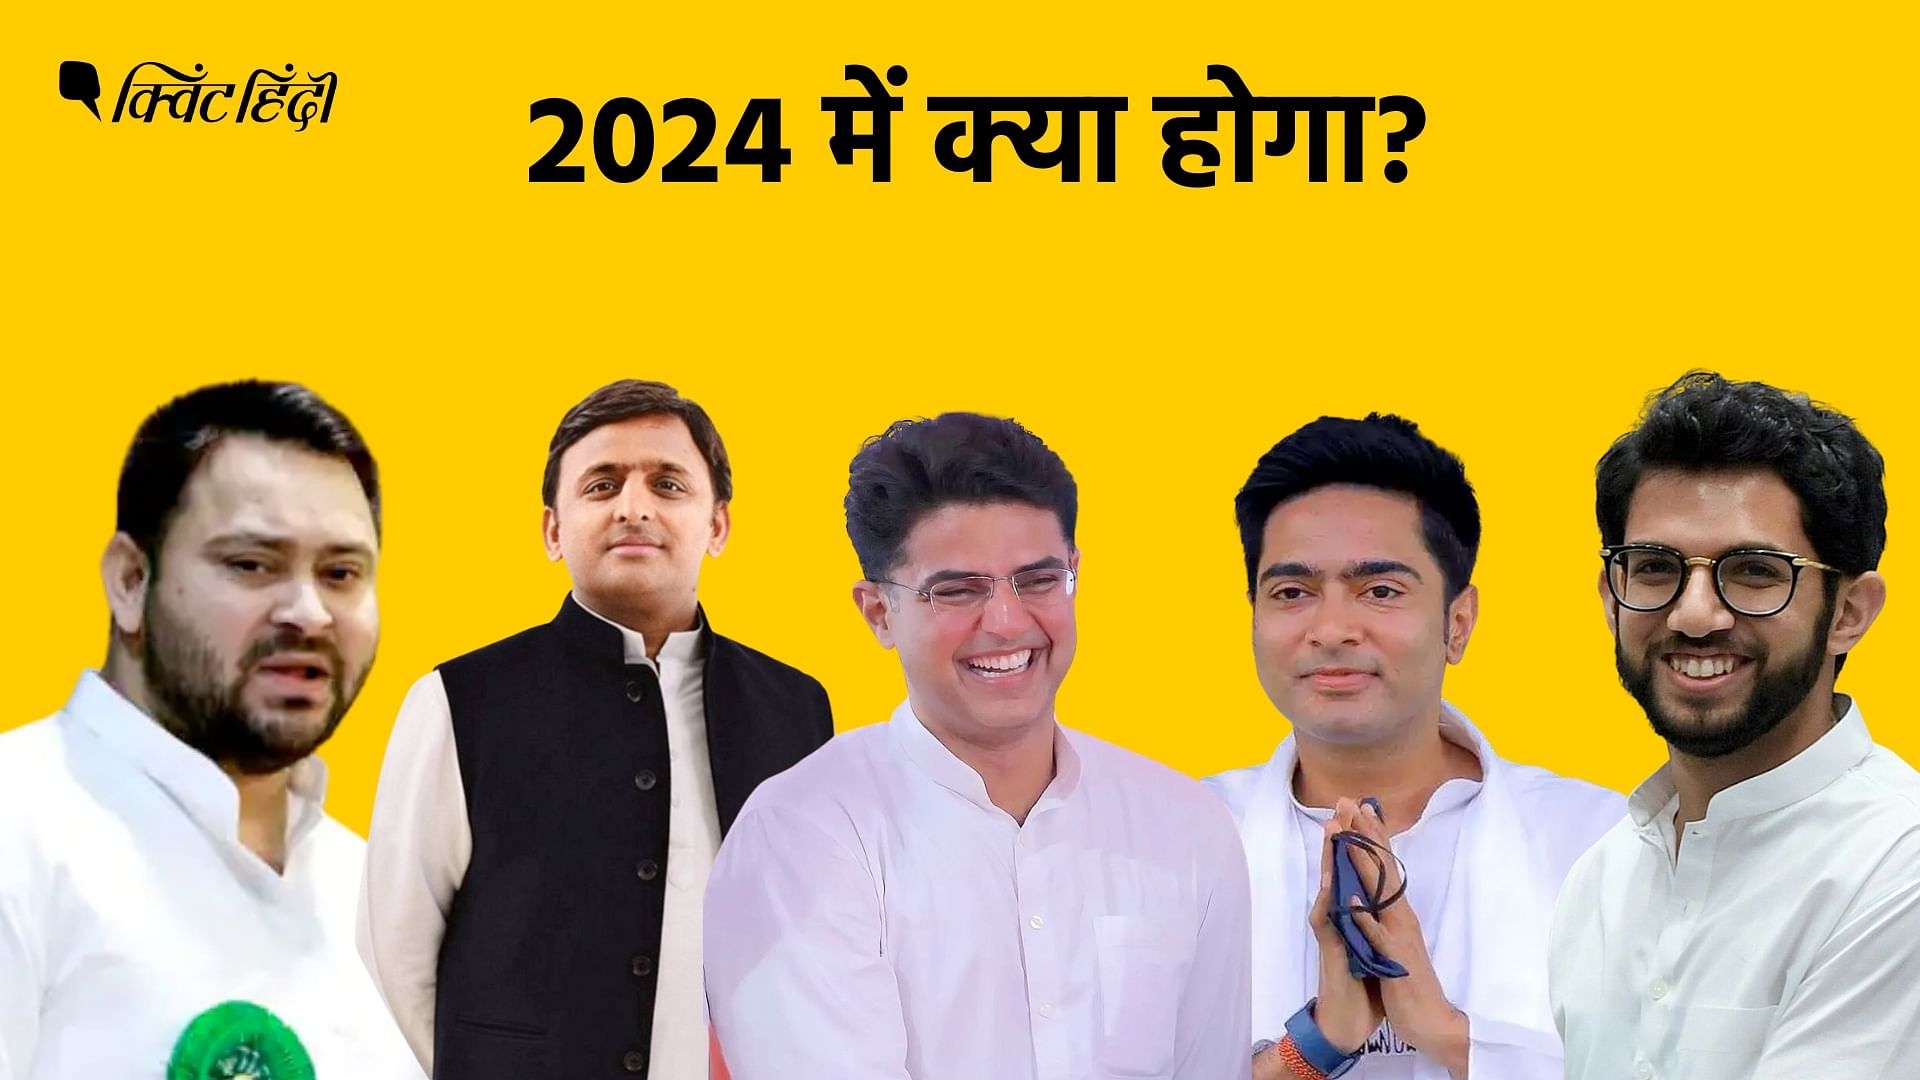 <div class="paragraphs"><p>Lok Sabha Election 2024 पांचों युवा नेताओं के लिए बहुत अहम है.</p></div>